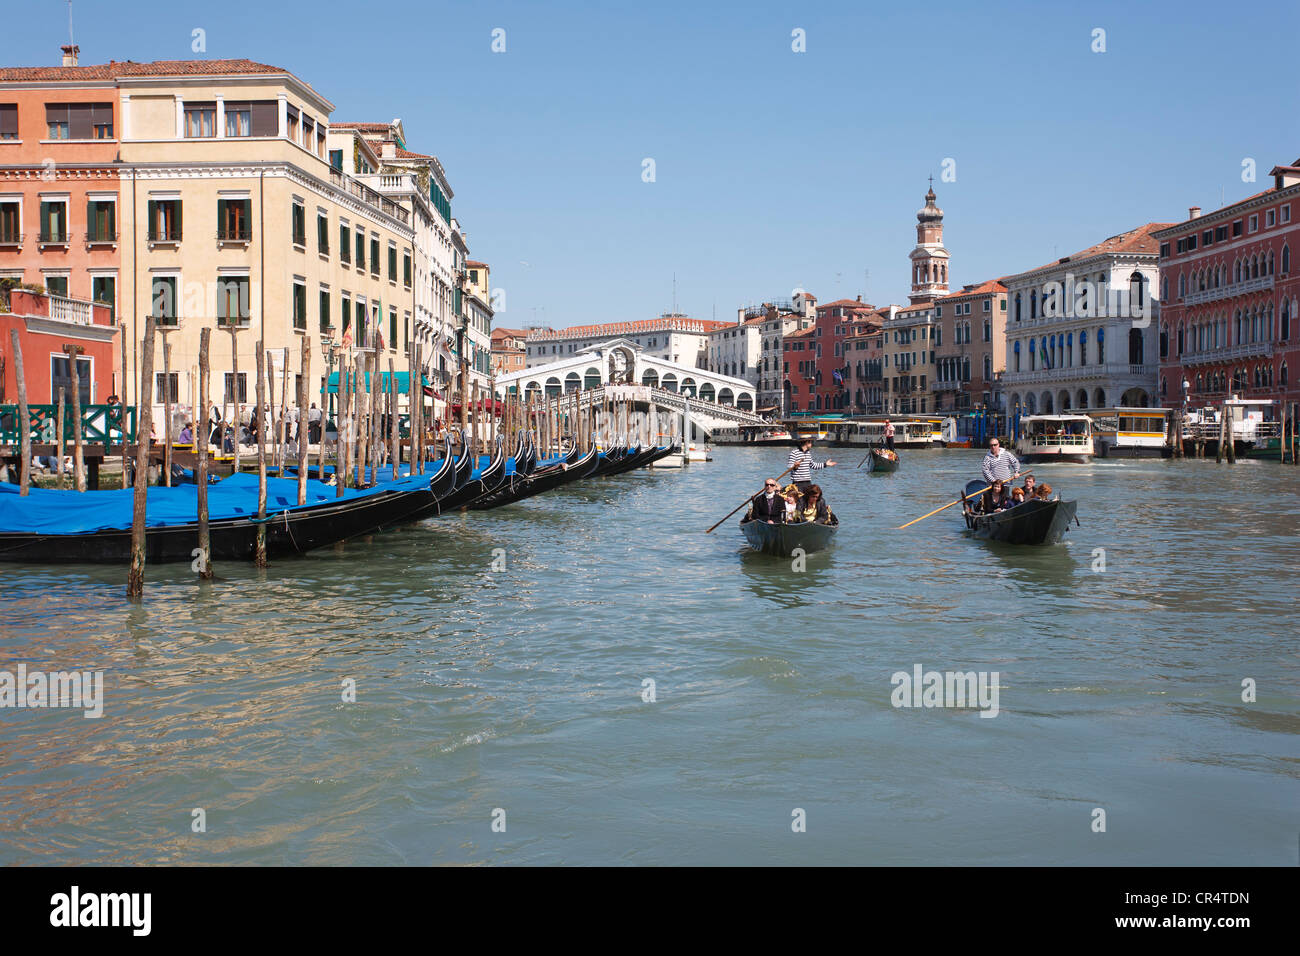 Canal Grande, le Grand Canal avec le Pont du Rialto, gondoliers en gondoles vénitiennes, passant à quai des gondoles, Venise, Italie Banque D'Images